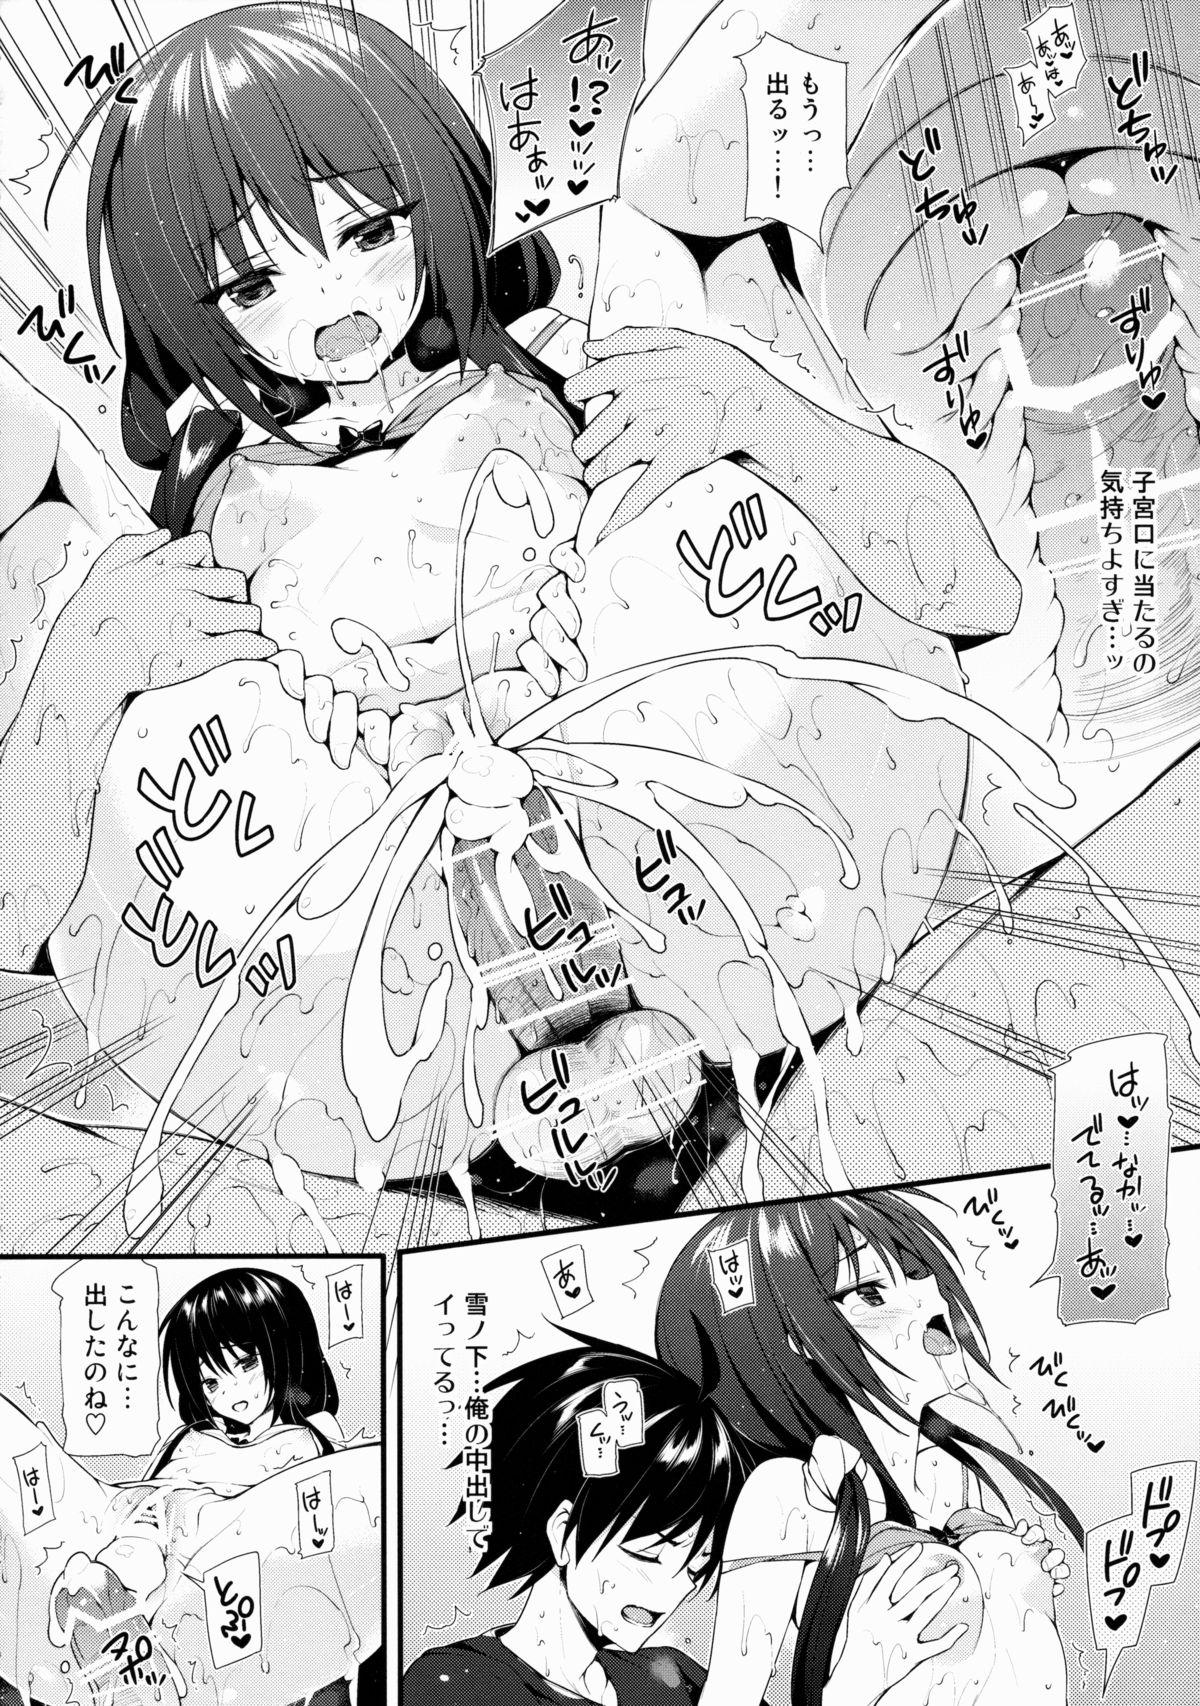 Cocks Harunon to Himatsubushi - Yahari ore no seishun love come wa machigatteiru Throatfuck - Page 3